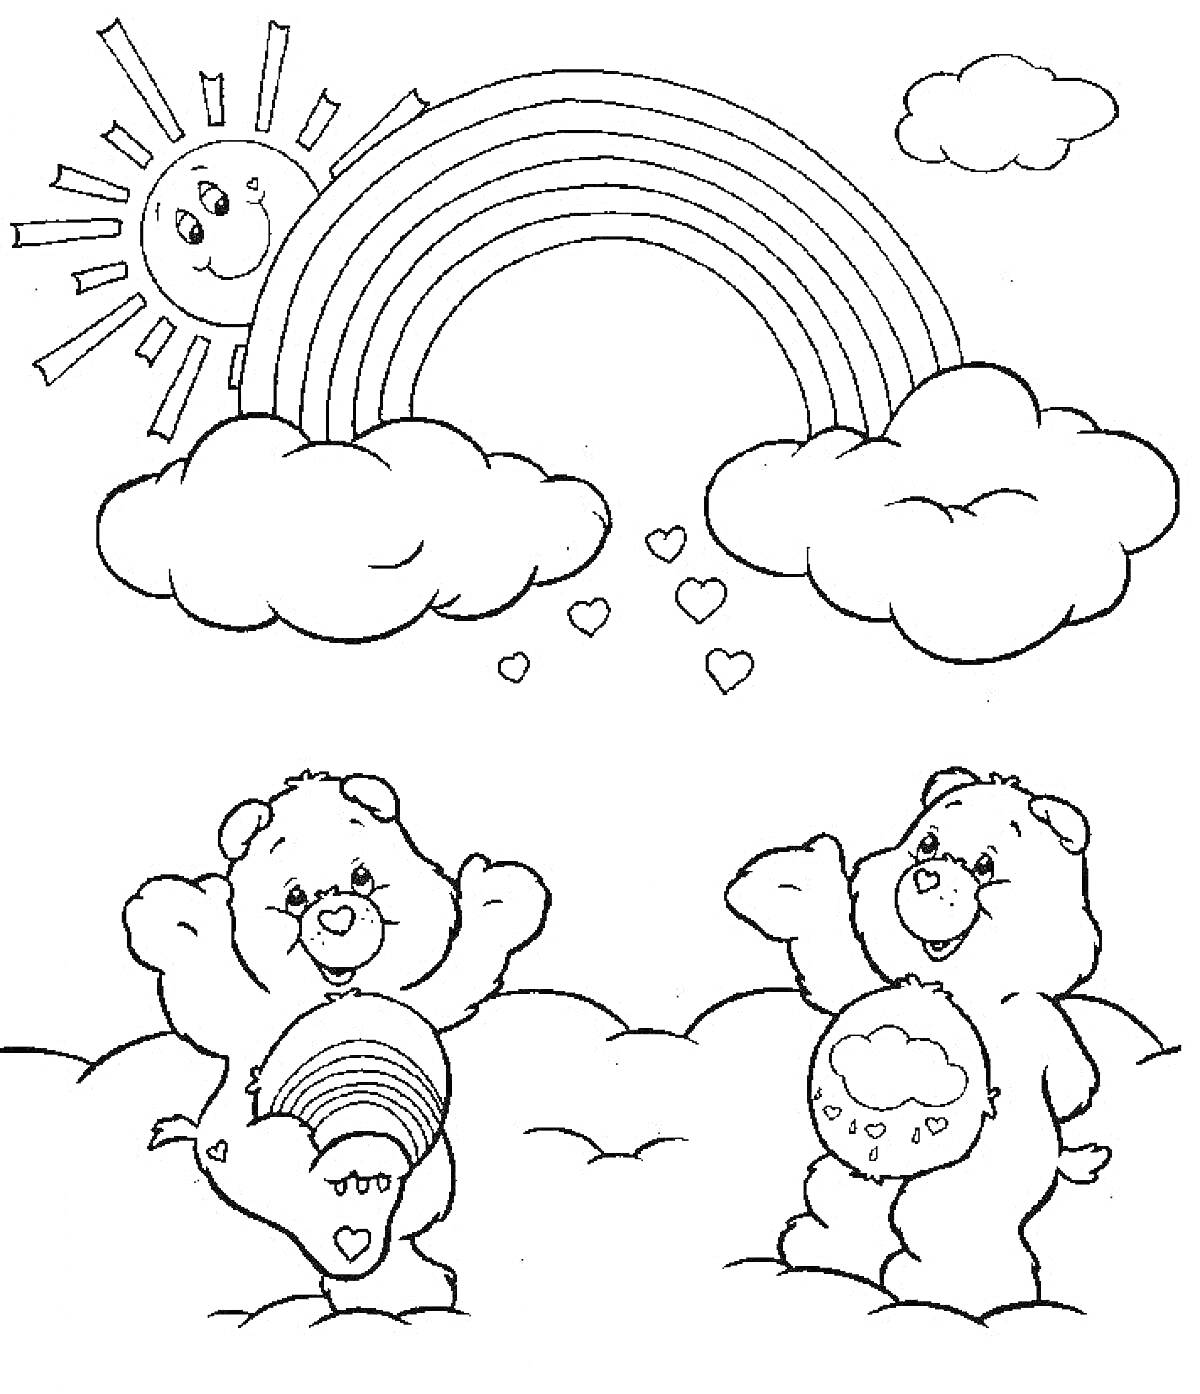 Раскраска Два медвежонка под радугой с солнышком, облаками и сердечками